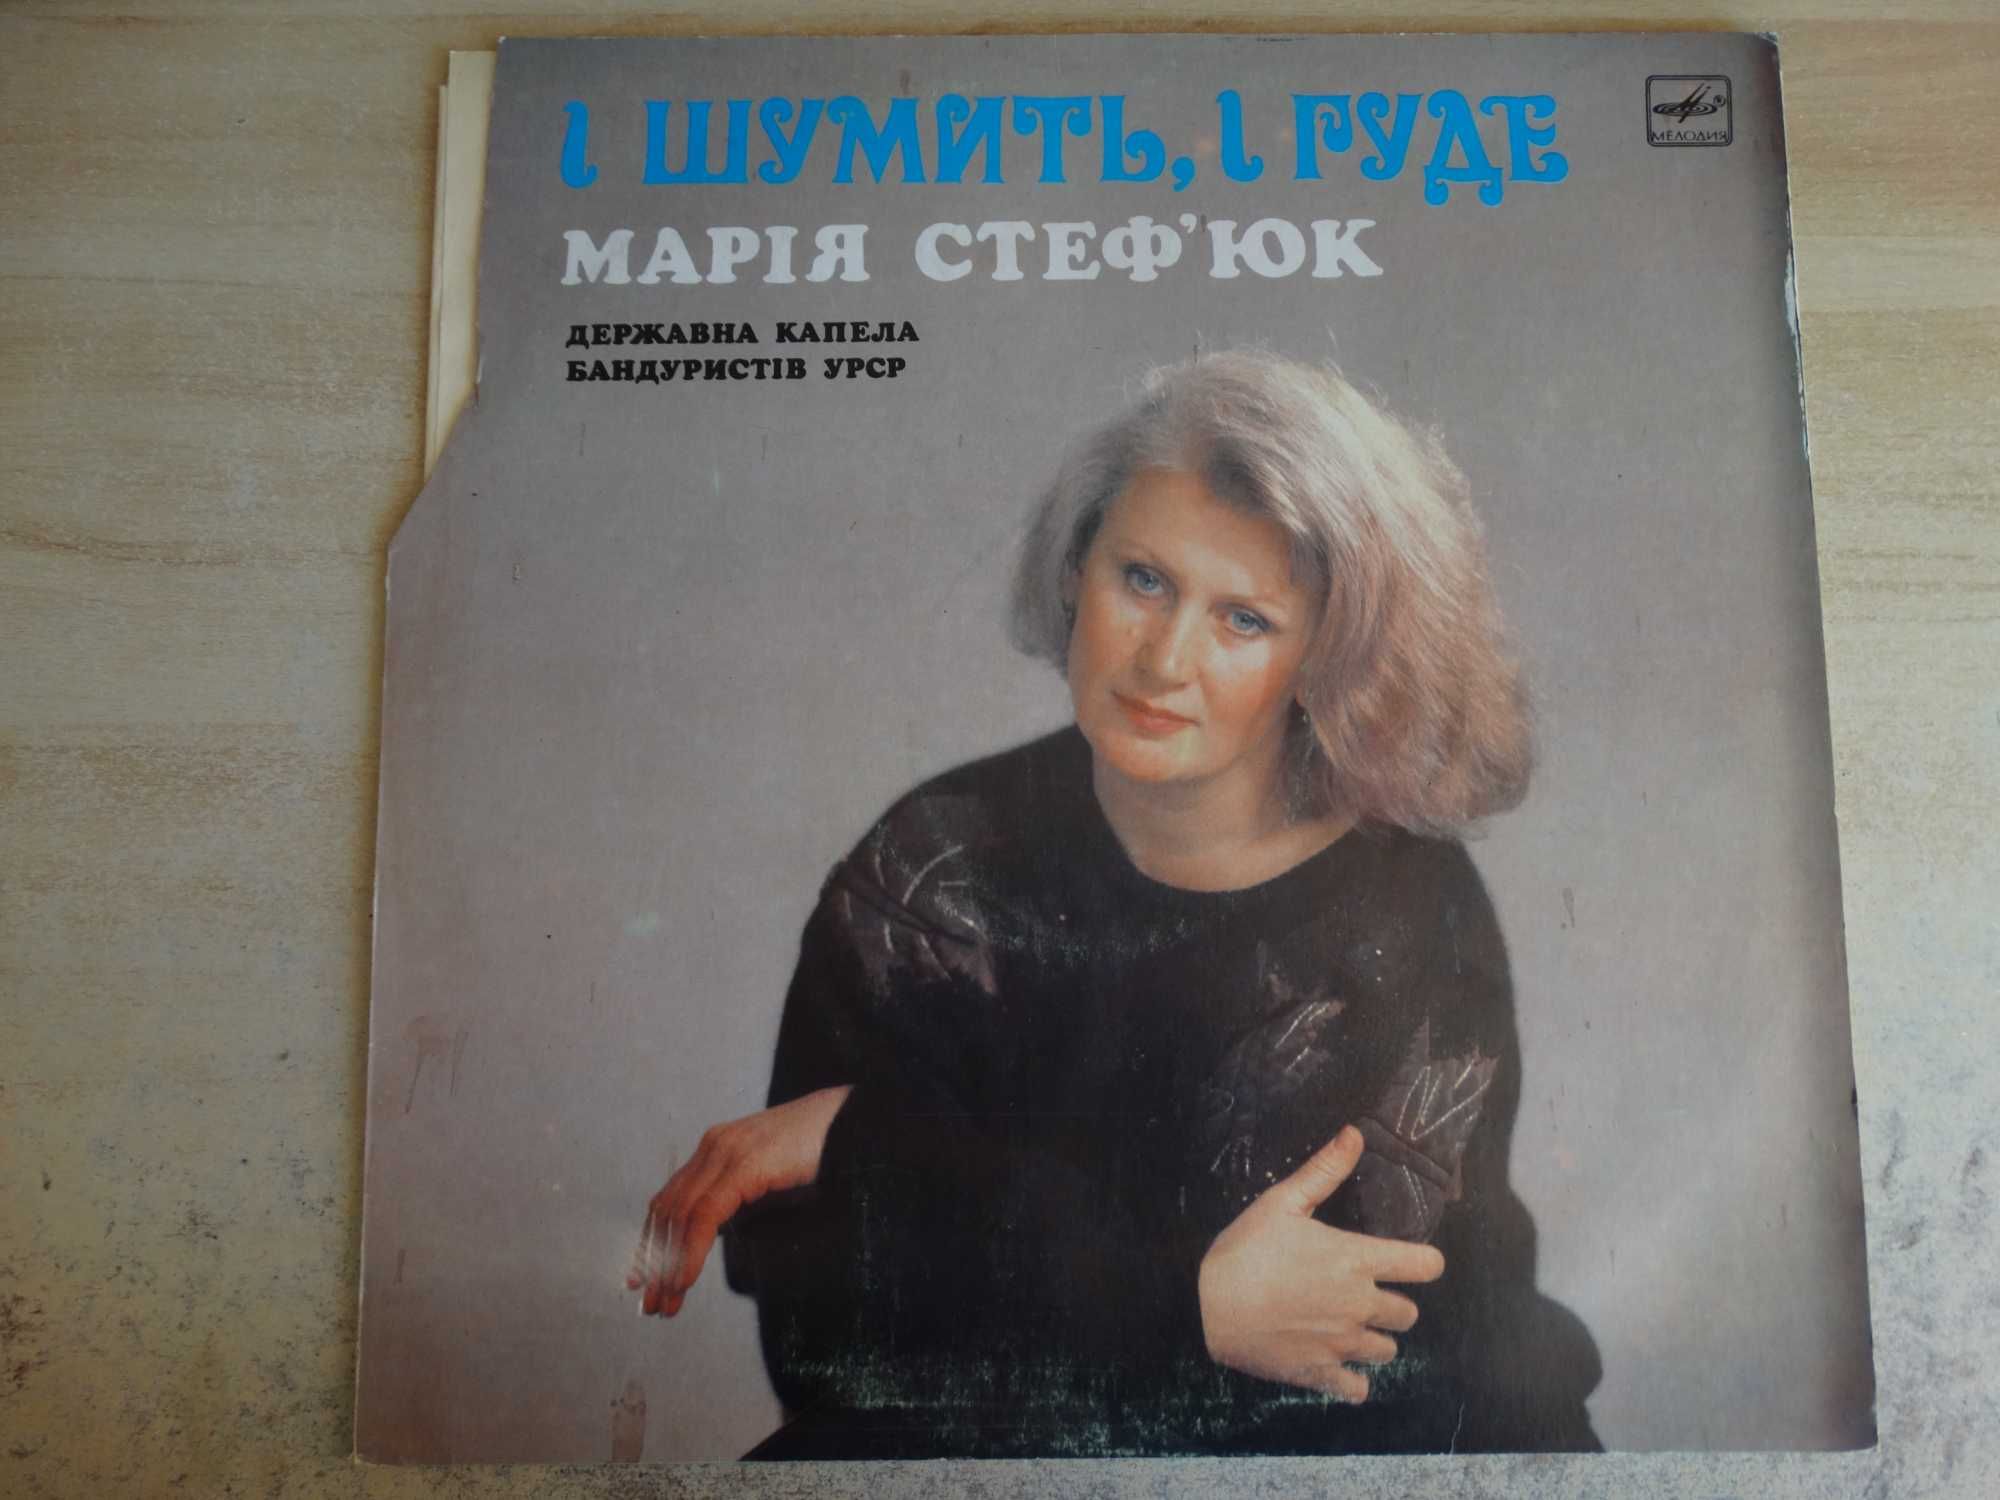 Вінілова платівка: "Марія Стефюк" "І Шумить , І Гуде"